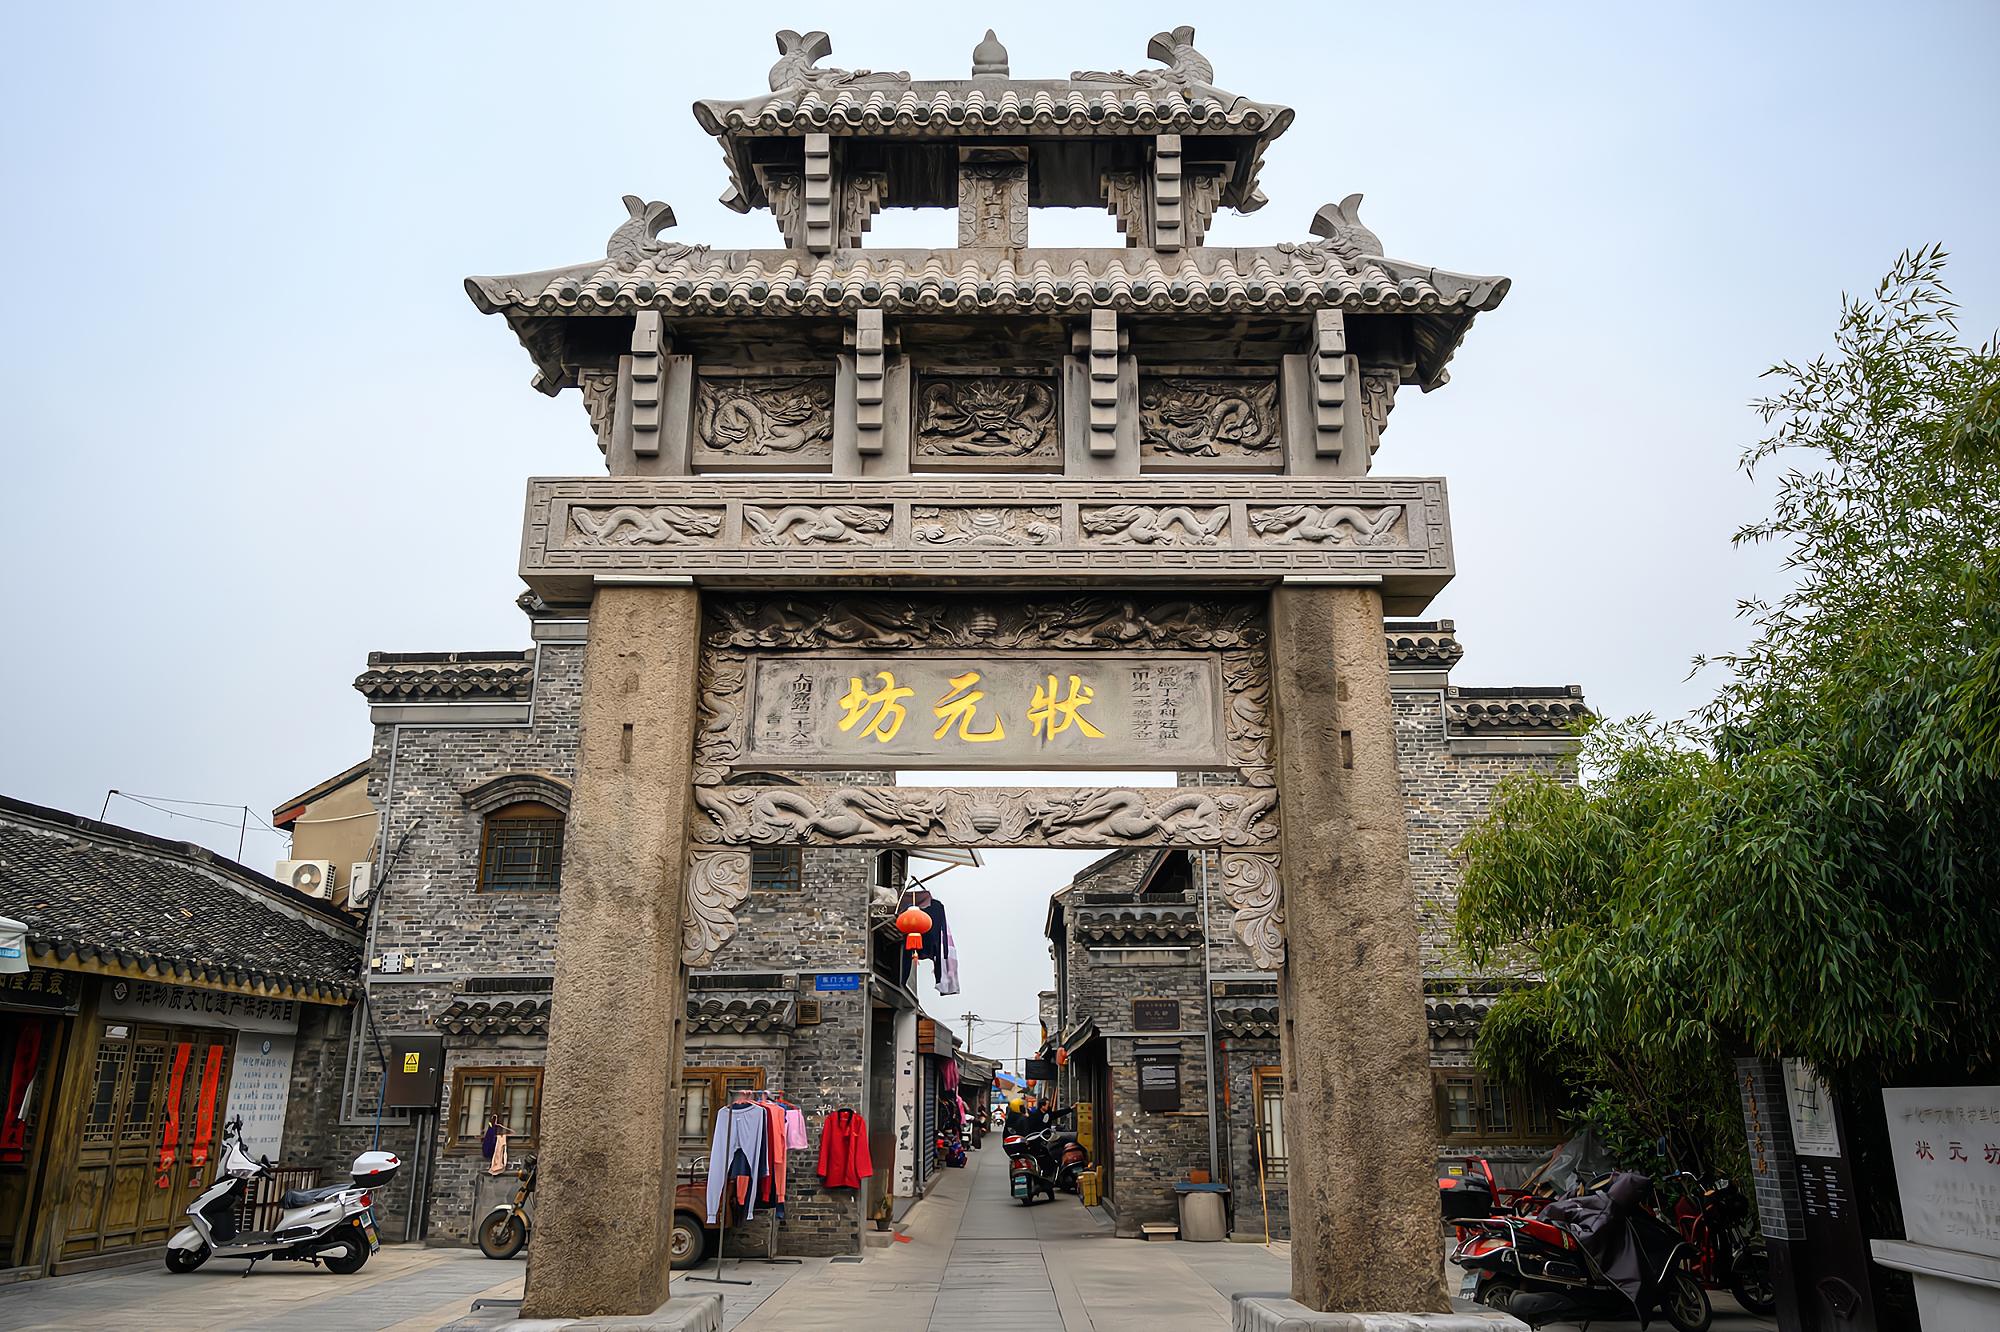 兴化东门历史文化街区、龙津河历史地段保护整治规划与城市设计